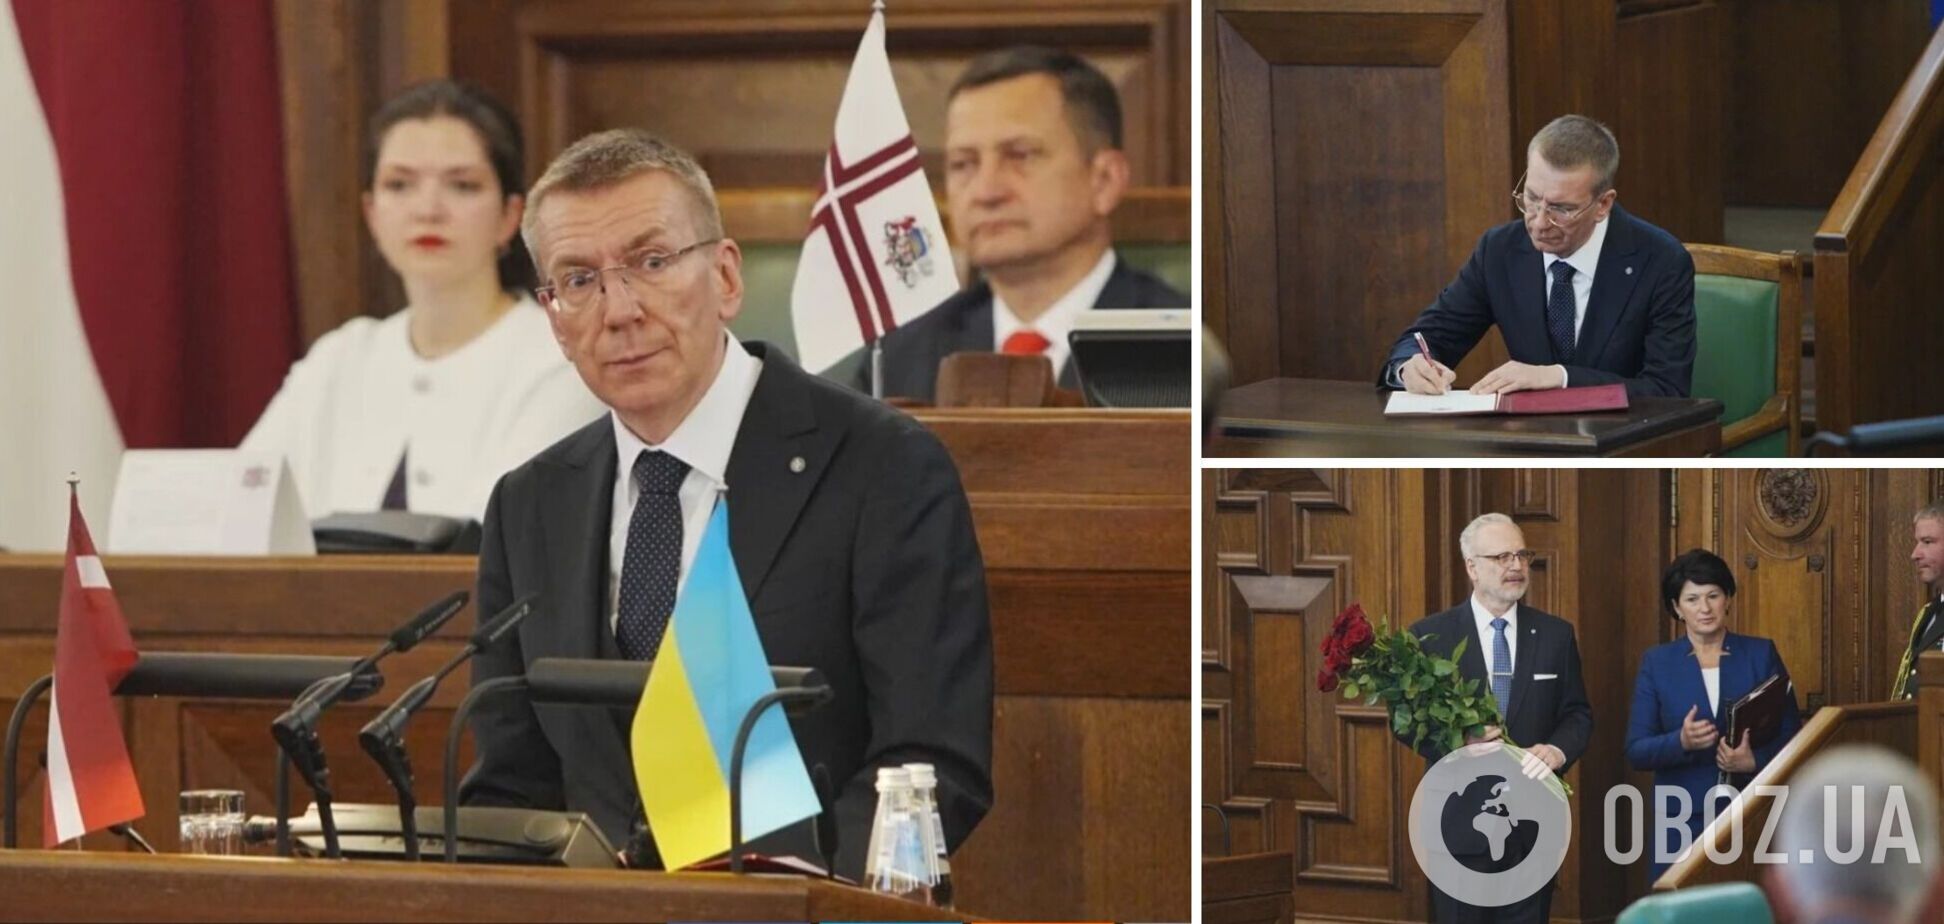 Эдгарс Ринкевичс принял присягу и вступил на пост президента Латвии: что он говорил о войне в Украине